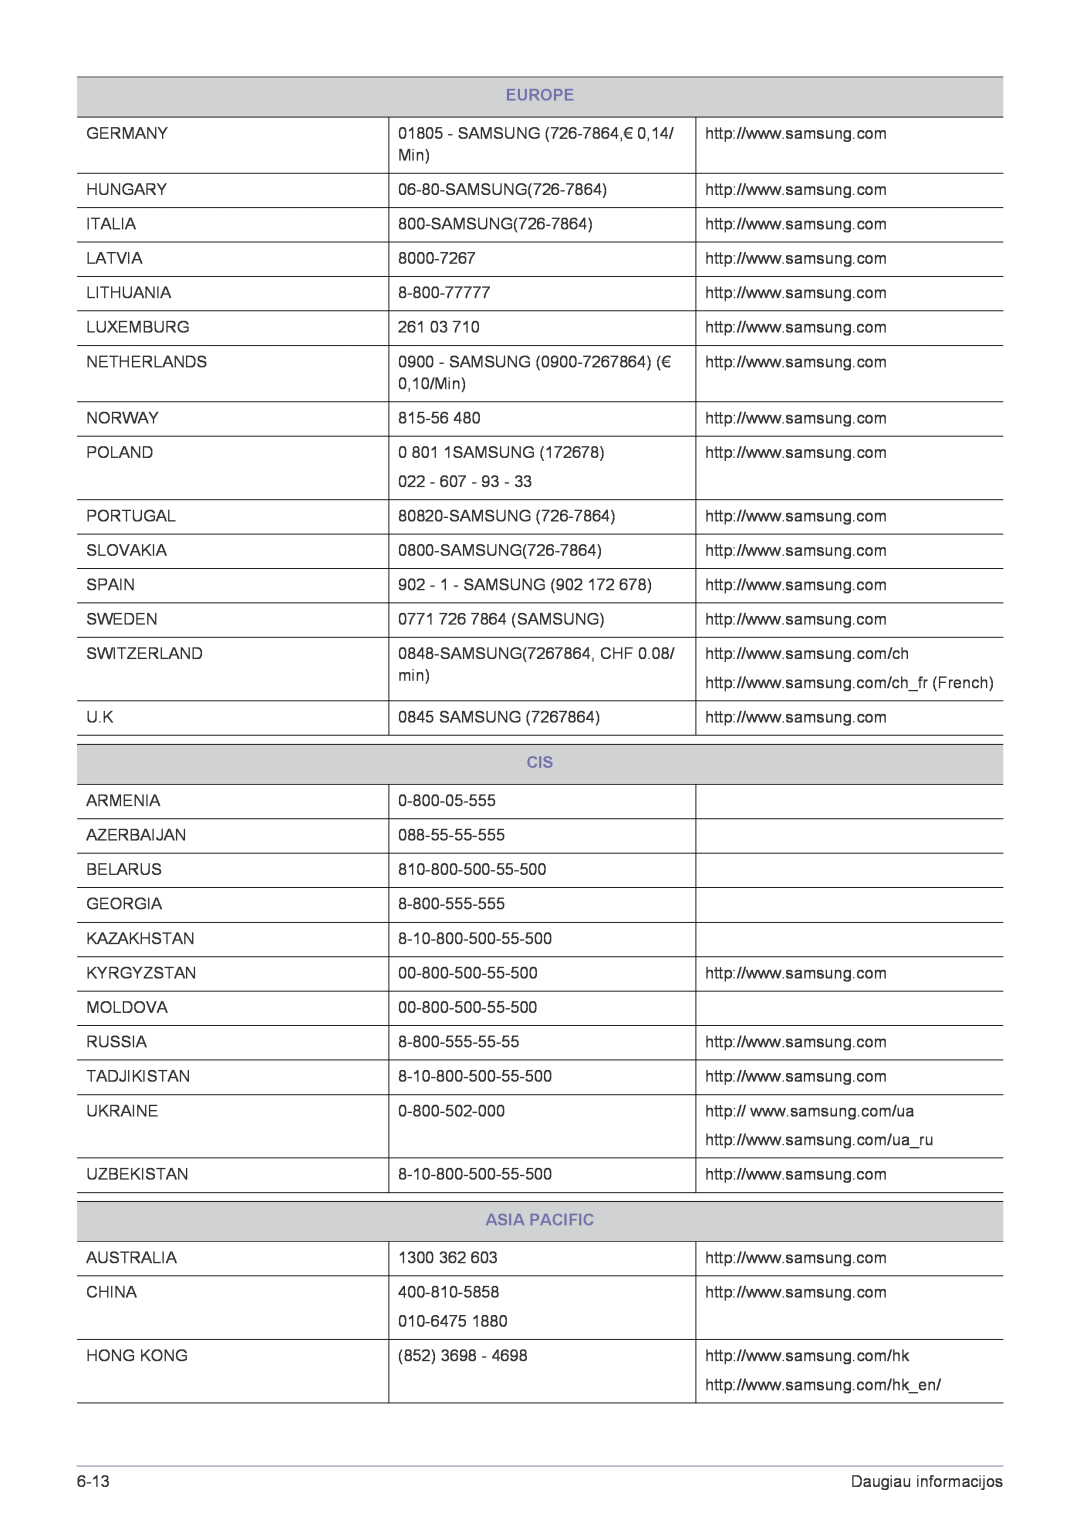 Samsung LS23X3HKFN/EN, LS24X3HKFE/EN, LS24X3HKFN/EN, LS22X3HKFN/EN, LS22X3HKFE/EN manual Europe, Asia Pacific 